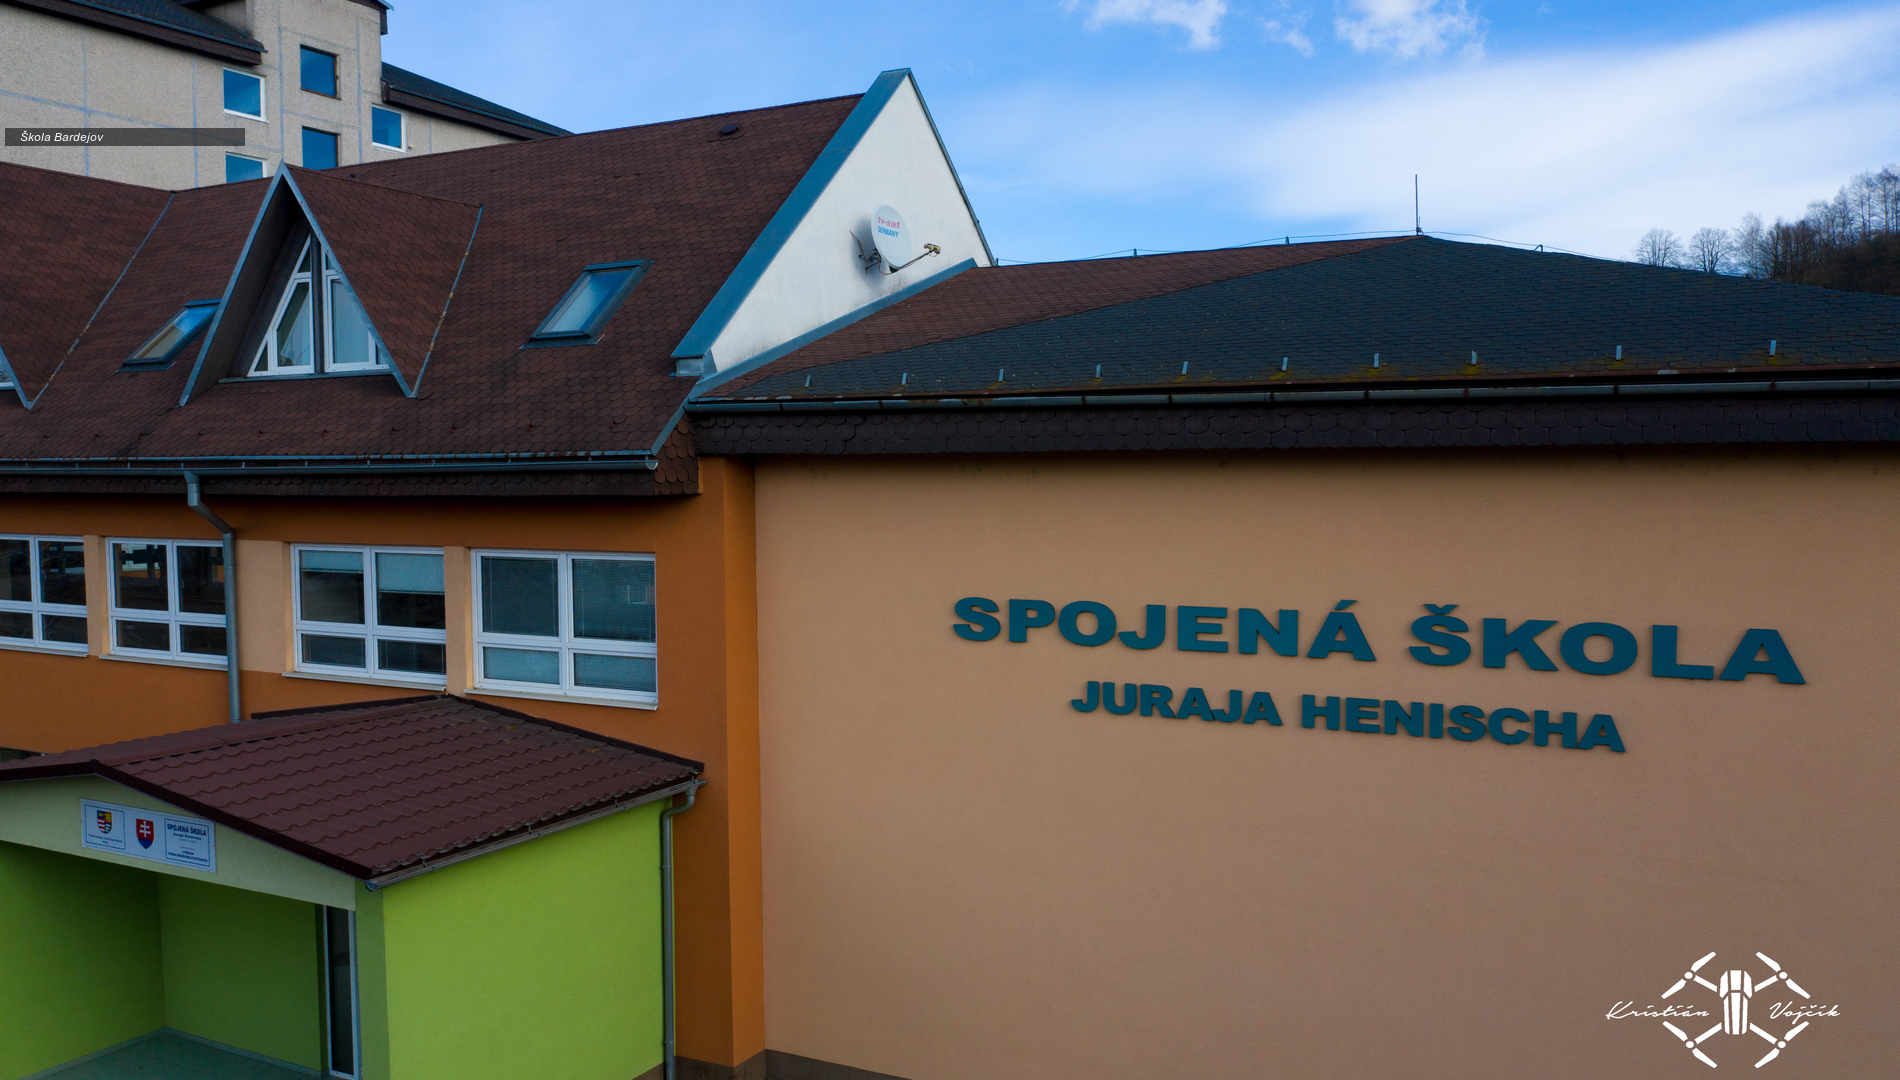 Spojená škola Juraja Henischa, Slovenská 5, Bardejov